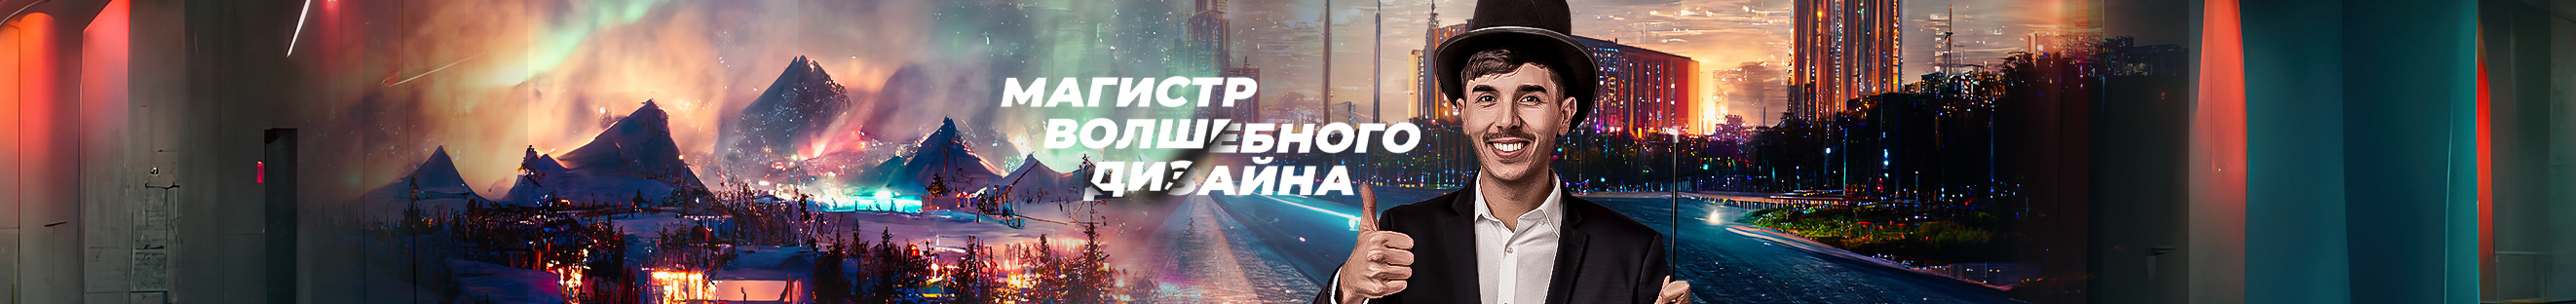 Andrei Antoshchenkov's profile banner